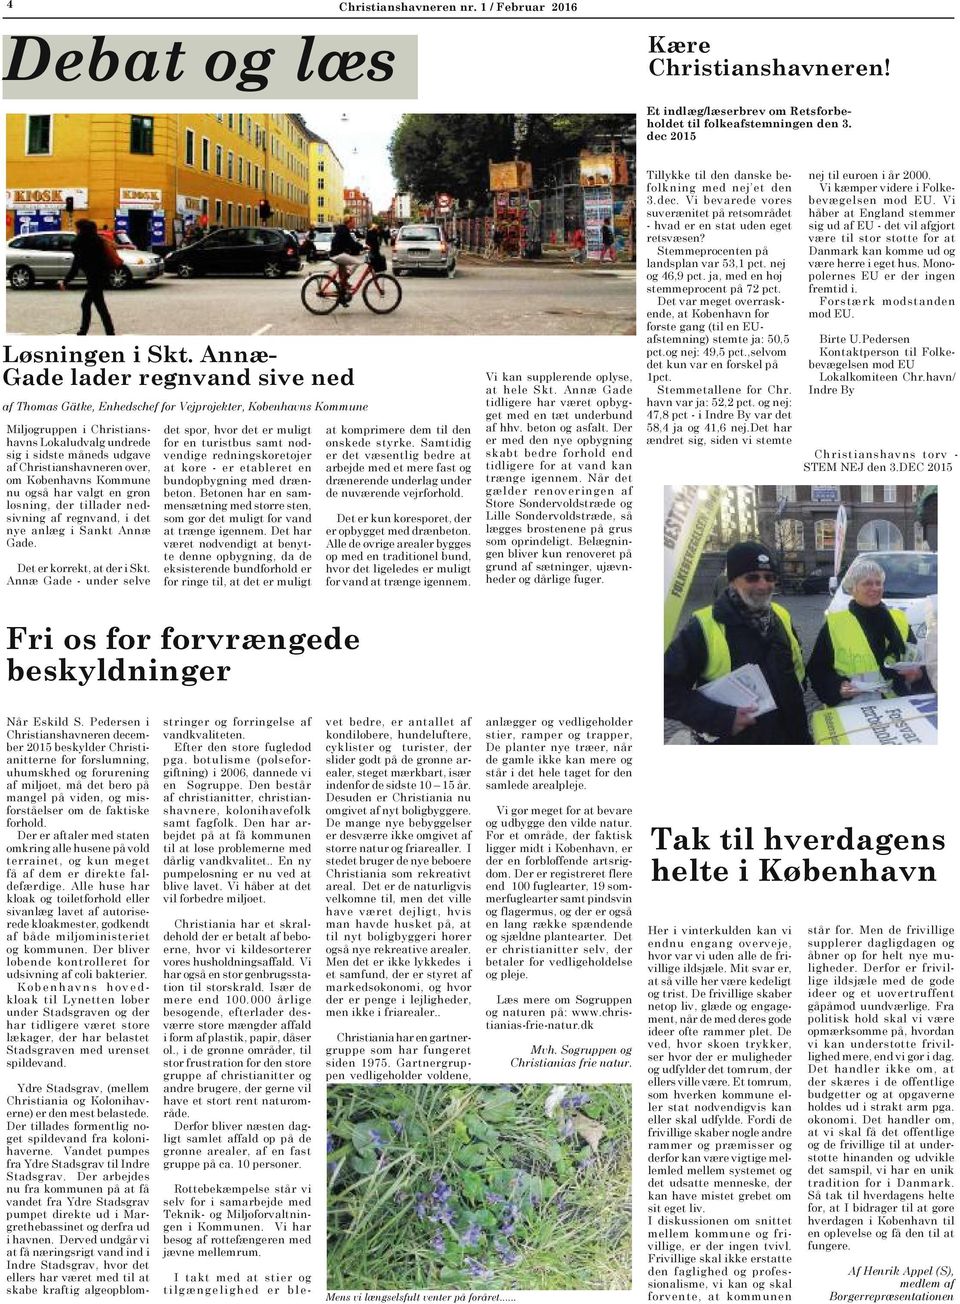 over, om Københavns Kommune nu også har valgt en grøn løsning, der tillader nedsivning af regnvand, i det nye anlæg i Sankt Annæ Gade. Det er korrekt, at der i Skt.